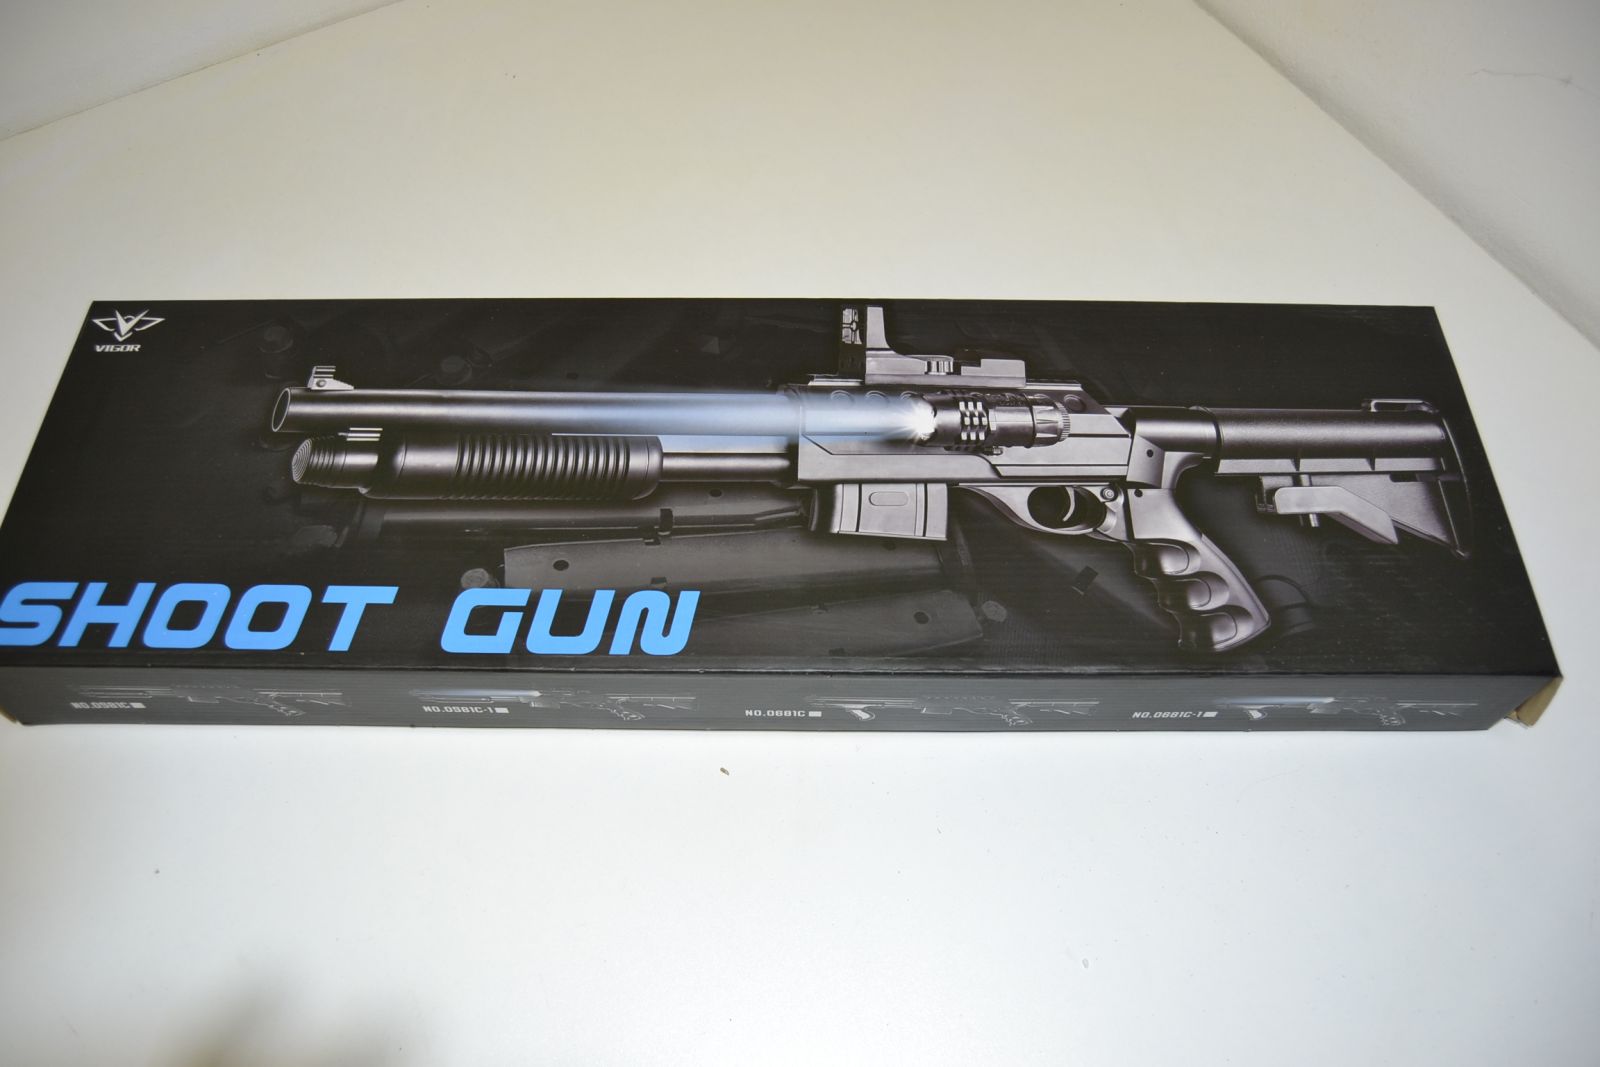 Kuličková pistole 0581D-1, kuličkovka, puška, airsoft